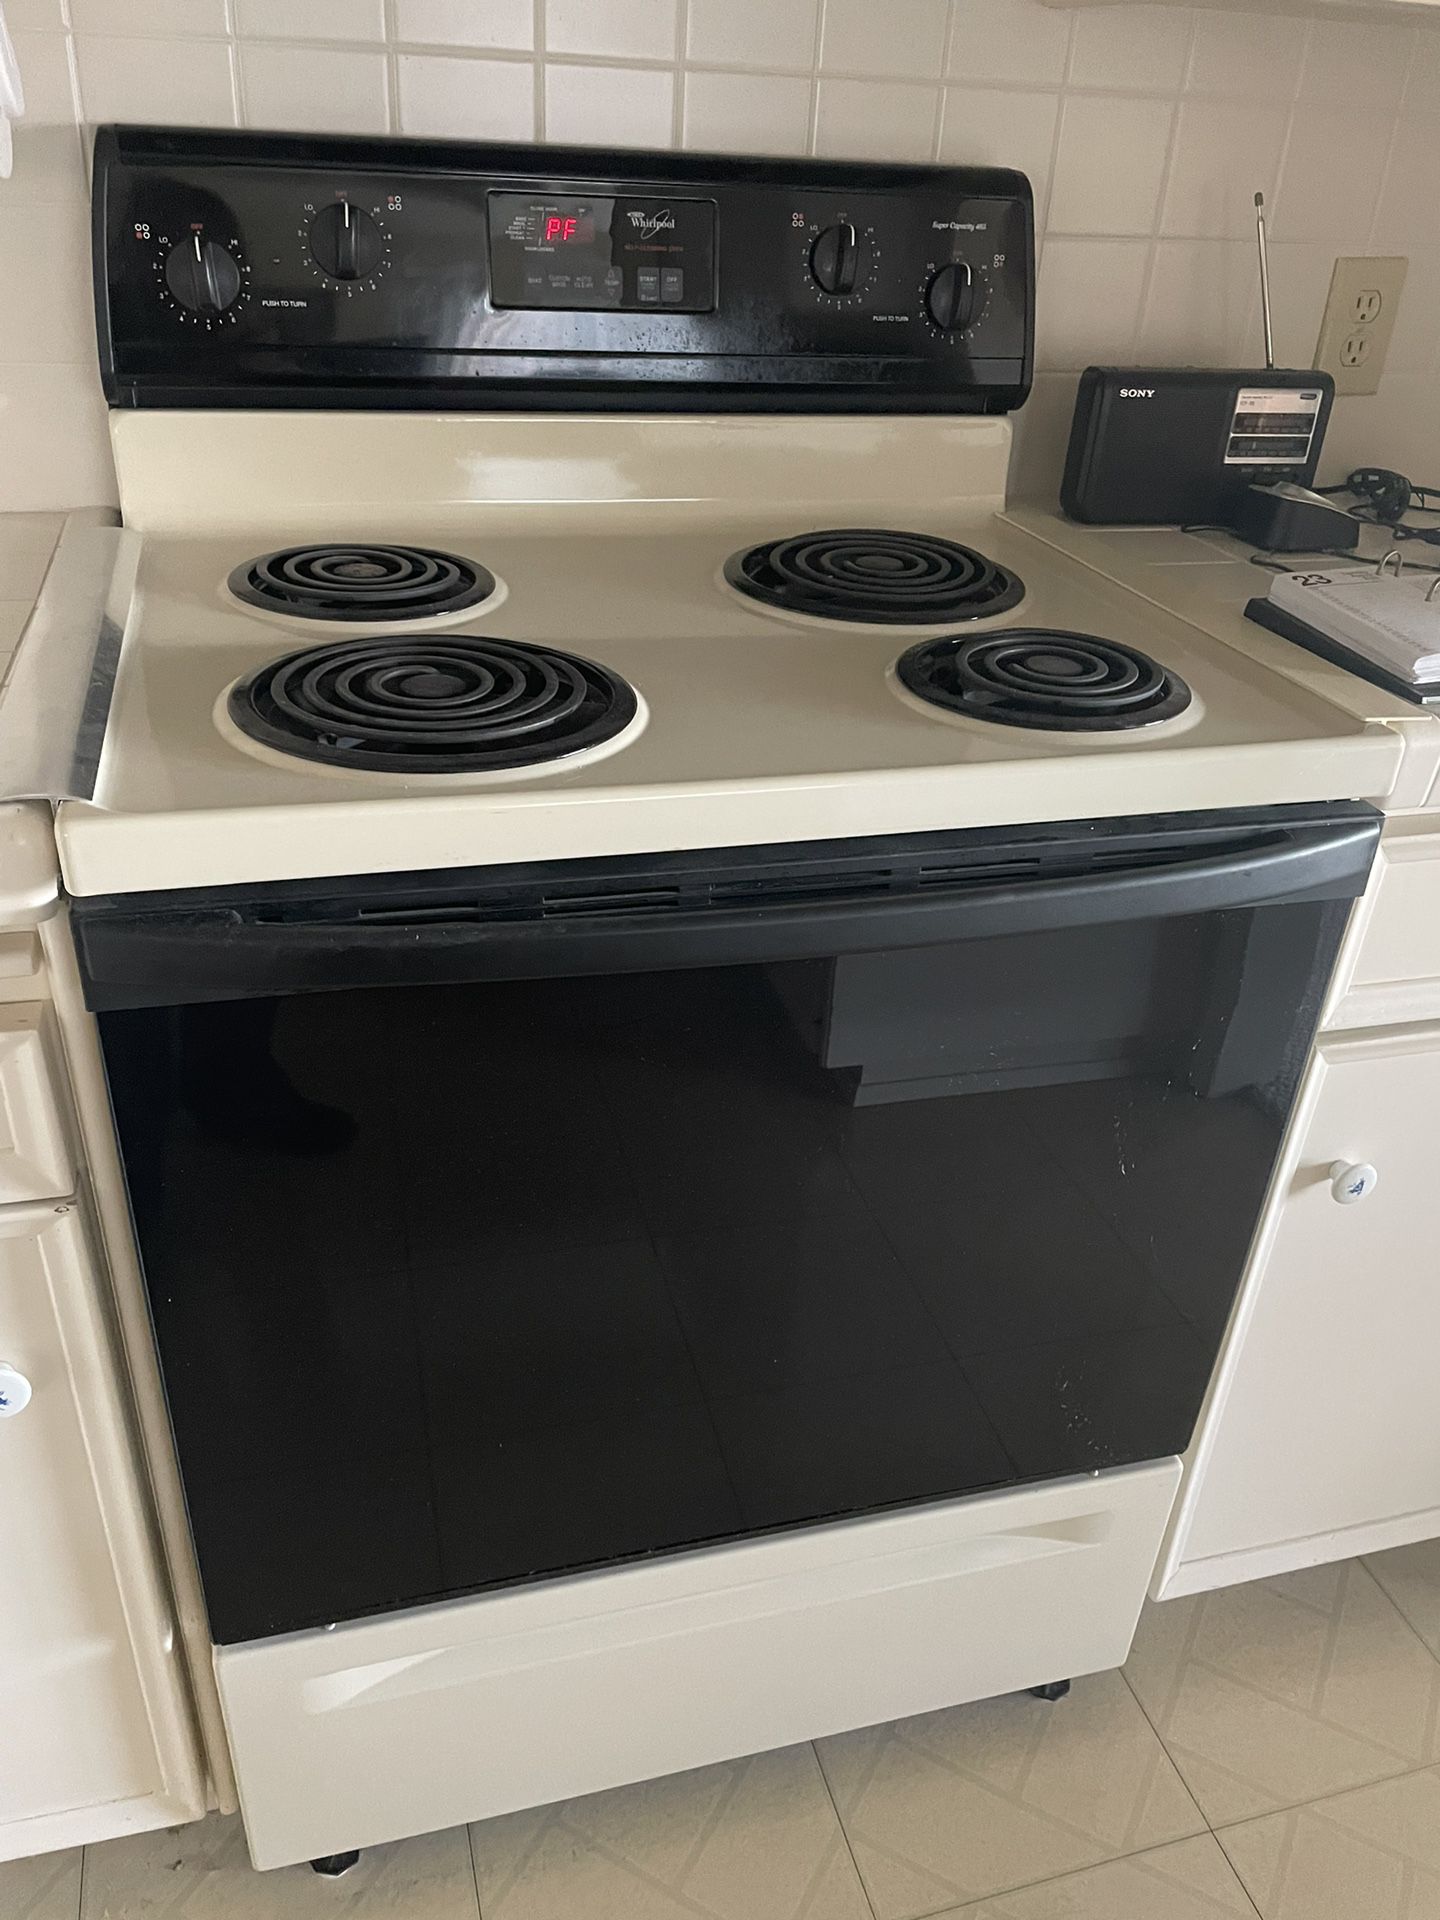 Range/cookTop/oven